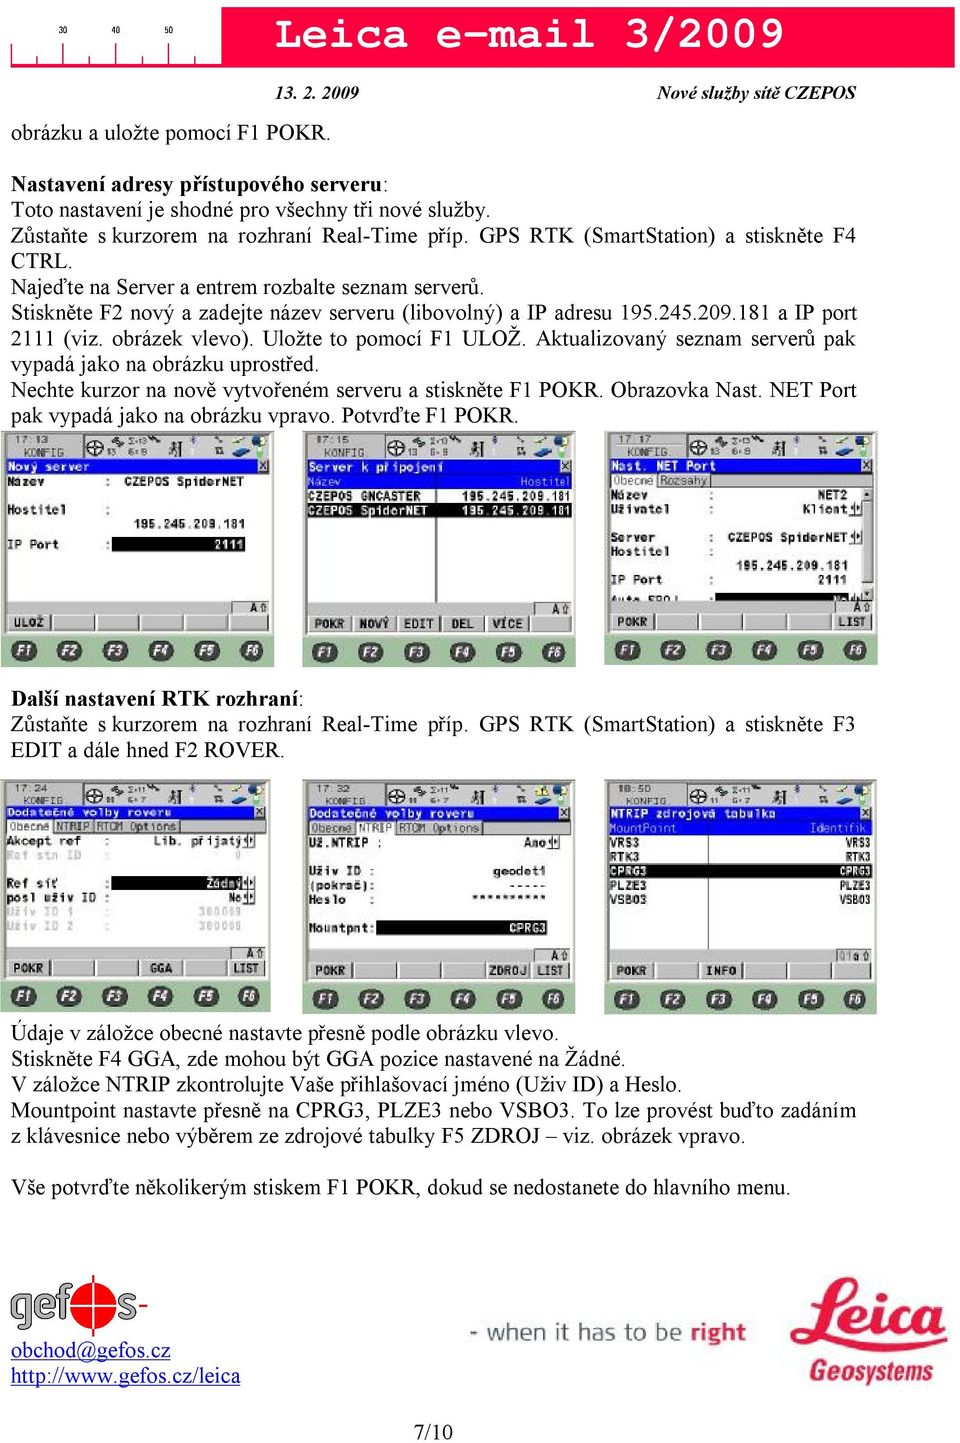 Aktualizovaný seznam serverů pak vypadá jako na obrázku uprostřed. Nechte kurzor na nově vytvořeném serveru a stiskněte F1 POKR. Obrazovka Nast. NET Port pak vypadá jako na obrázku vpravo.